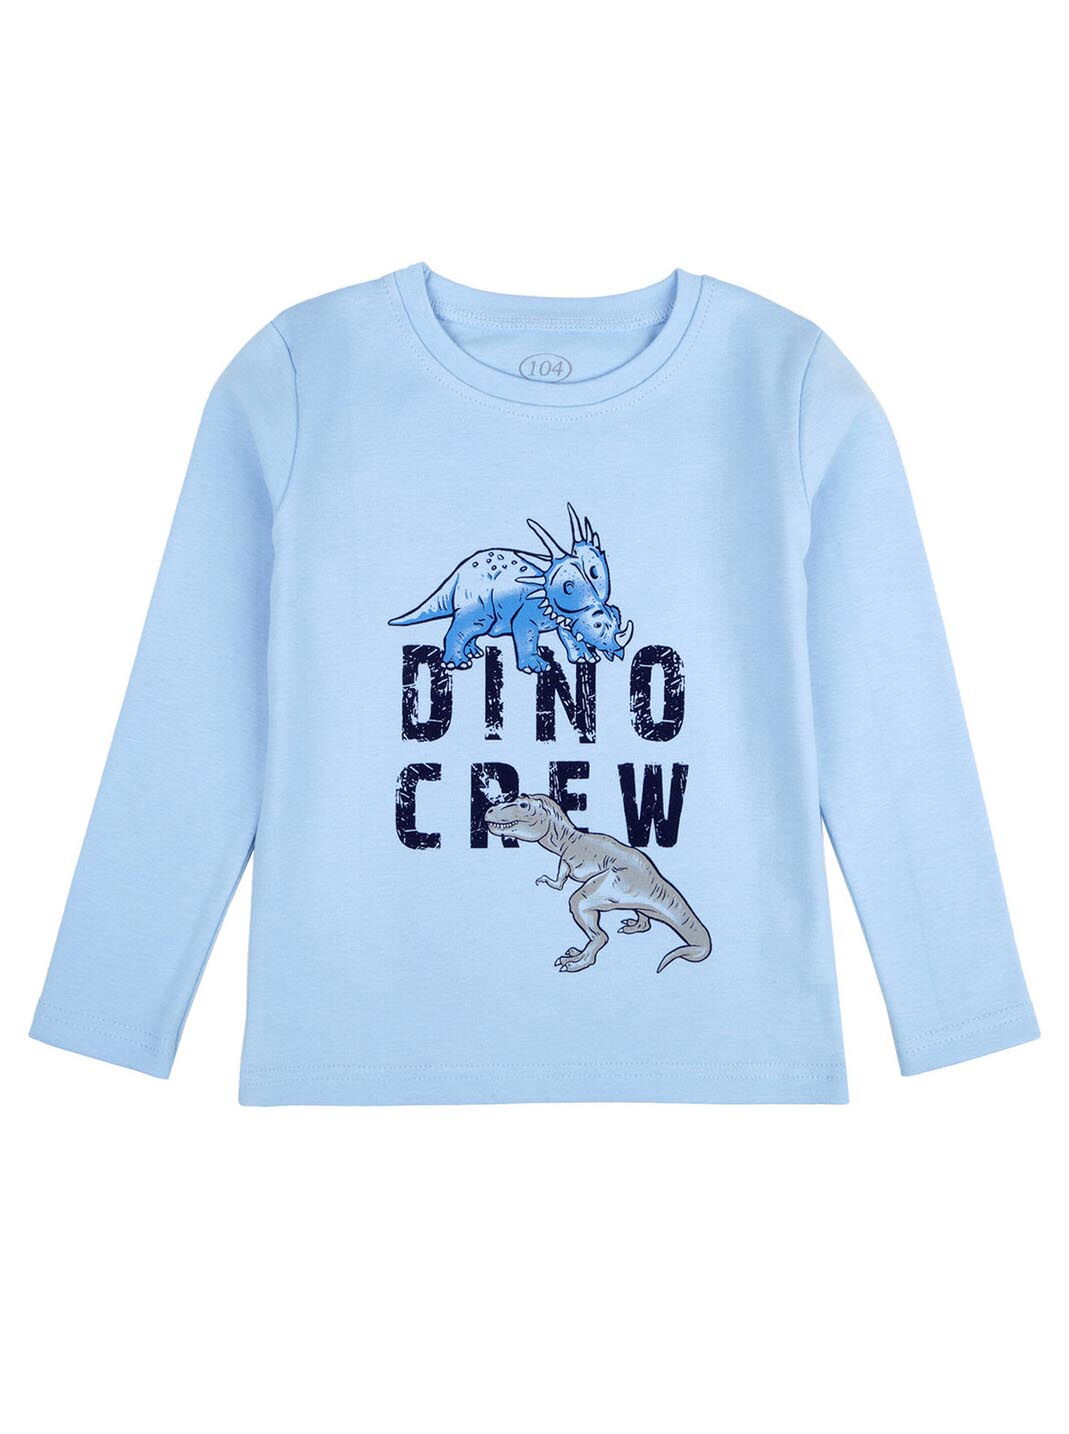 Реглан для мальчика Фламинго Dino голубой 899-407 - цена